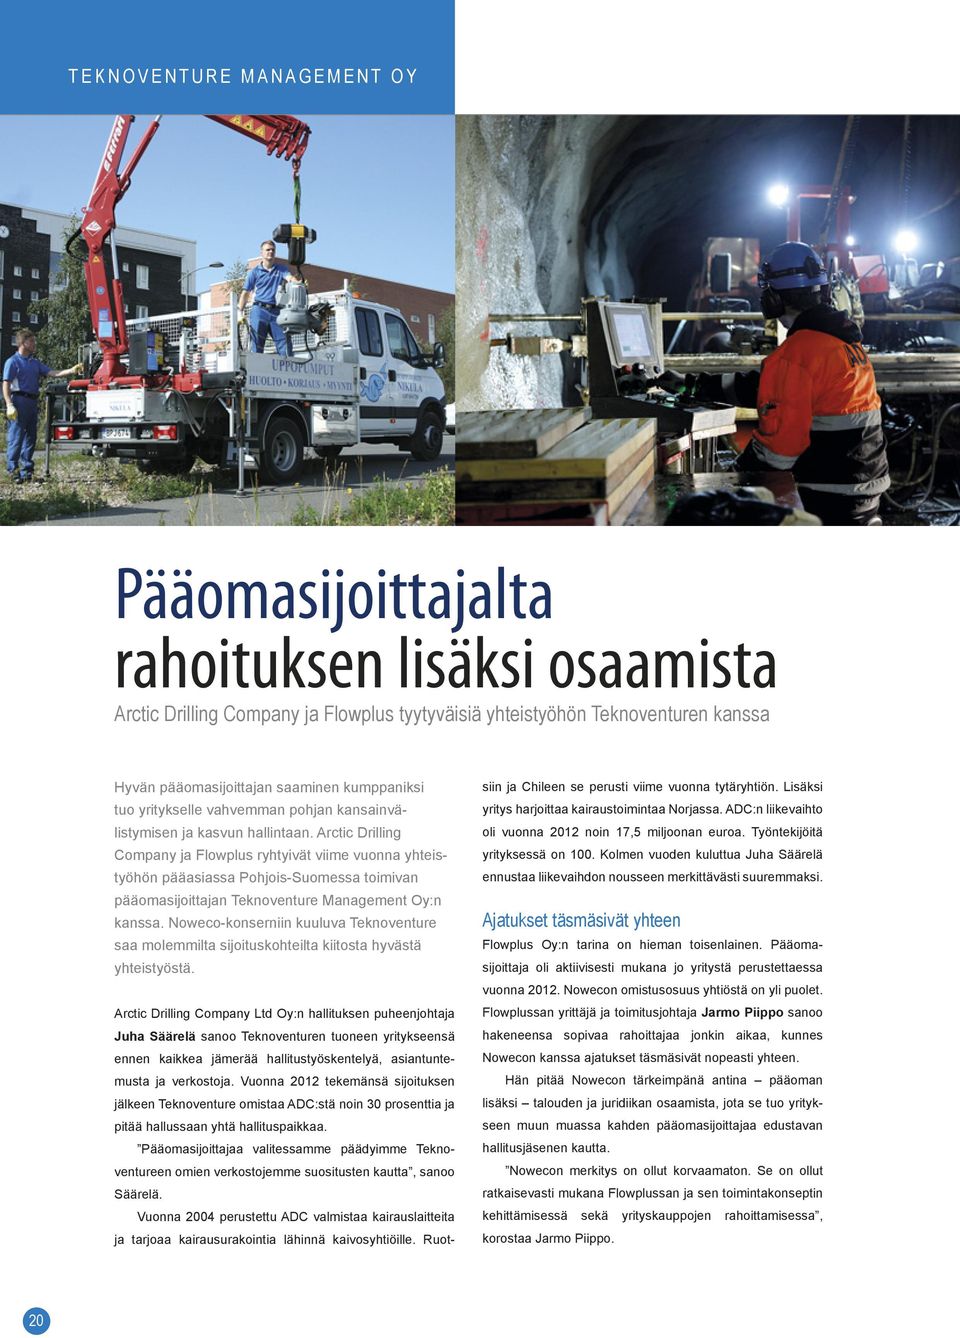 Arctic Drilling Company ja Flowplus ryhtyivät viime vuonna yhteistyöhön pääasiassa Pohjois-Suomessa toimivan pääomasijoittajan Teknoventure Management Oy:n kanssa.